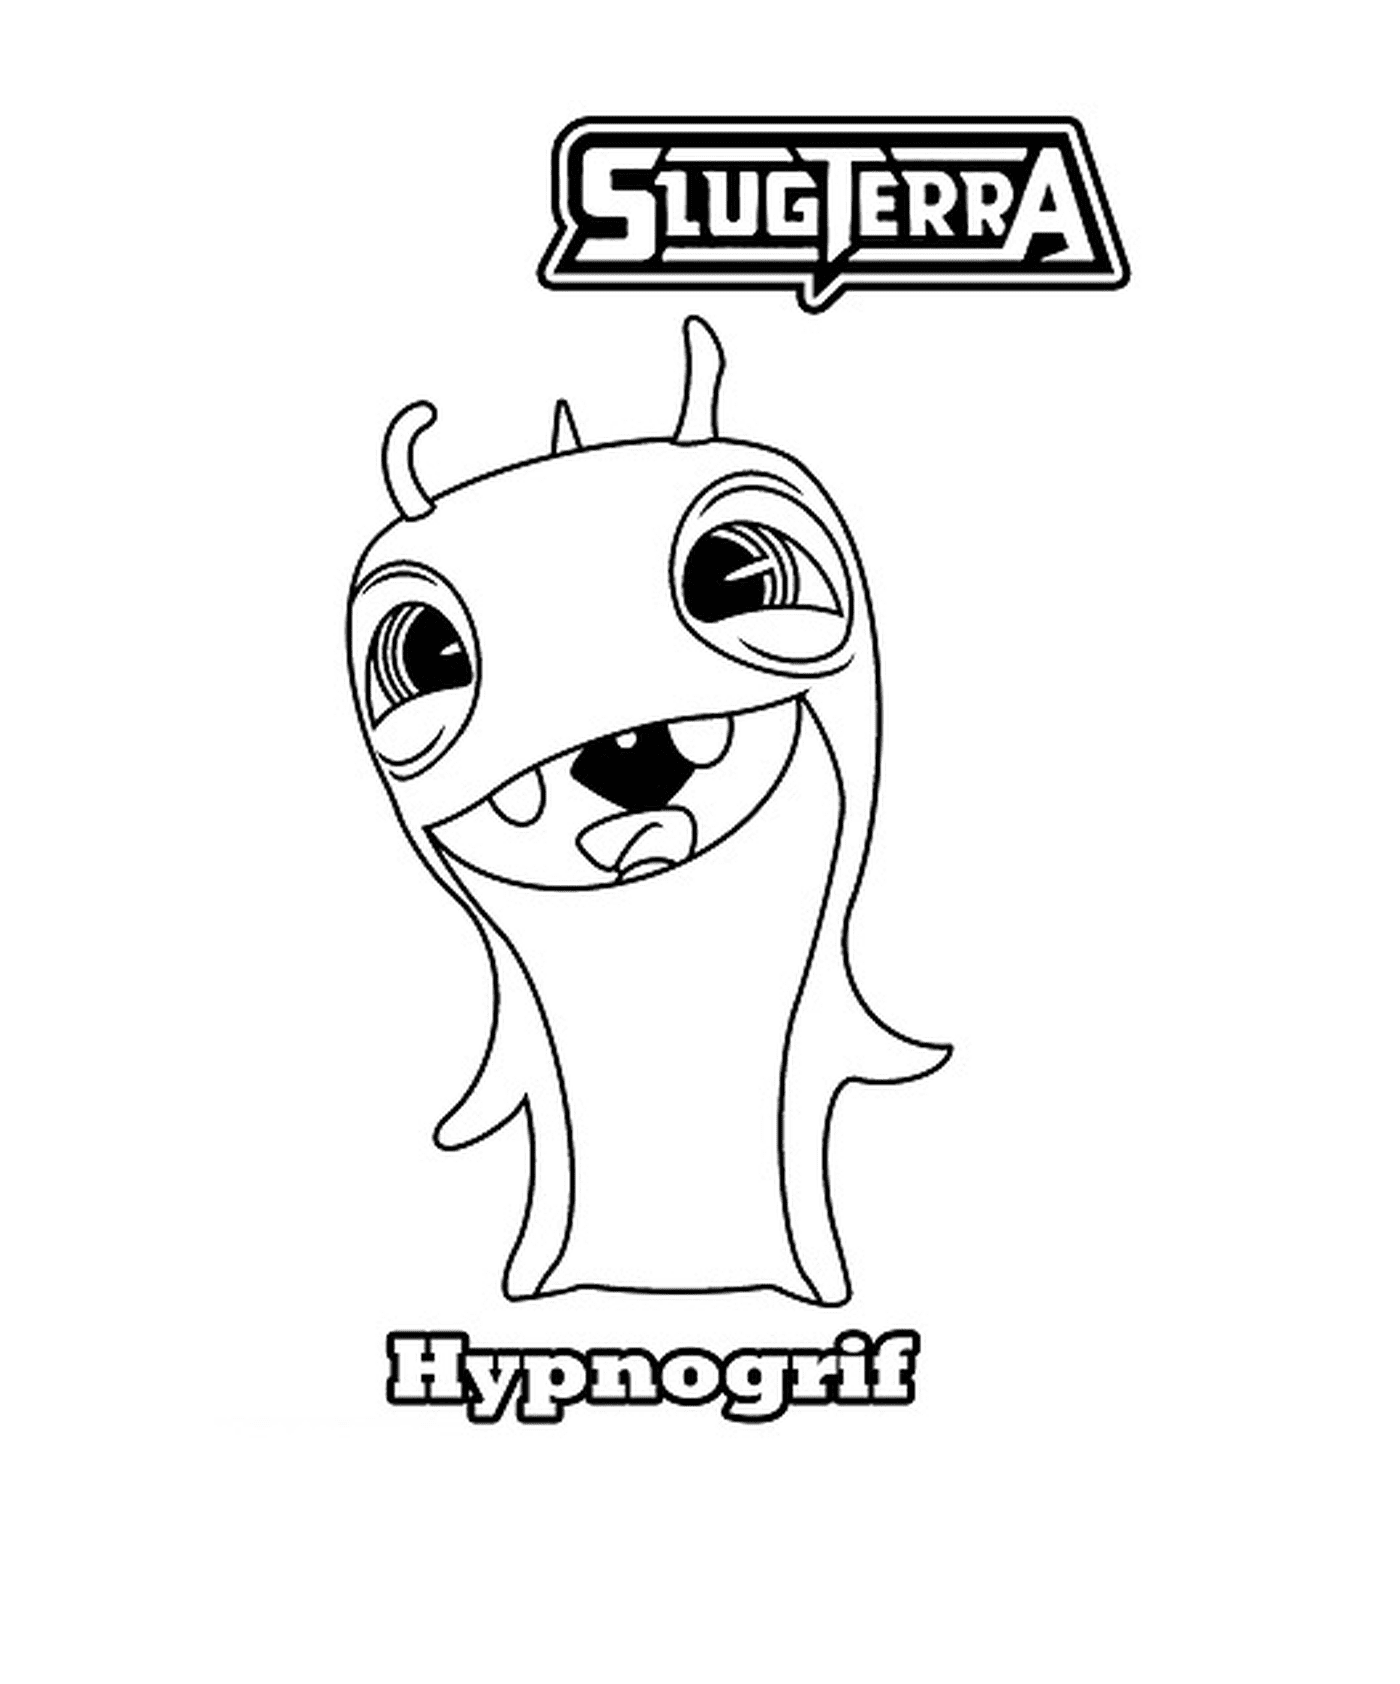  Hipnotizador de desenhos animados slugterra hipnogrif 